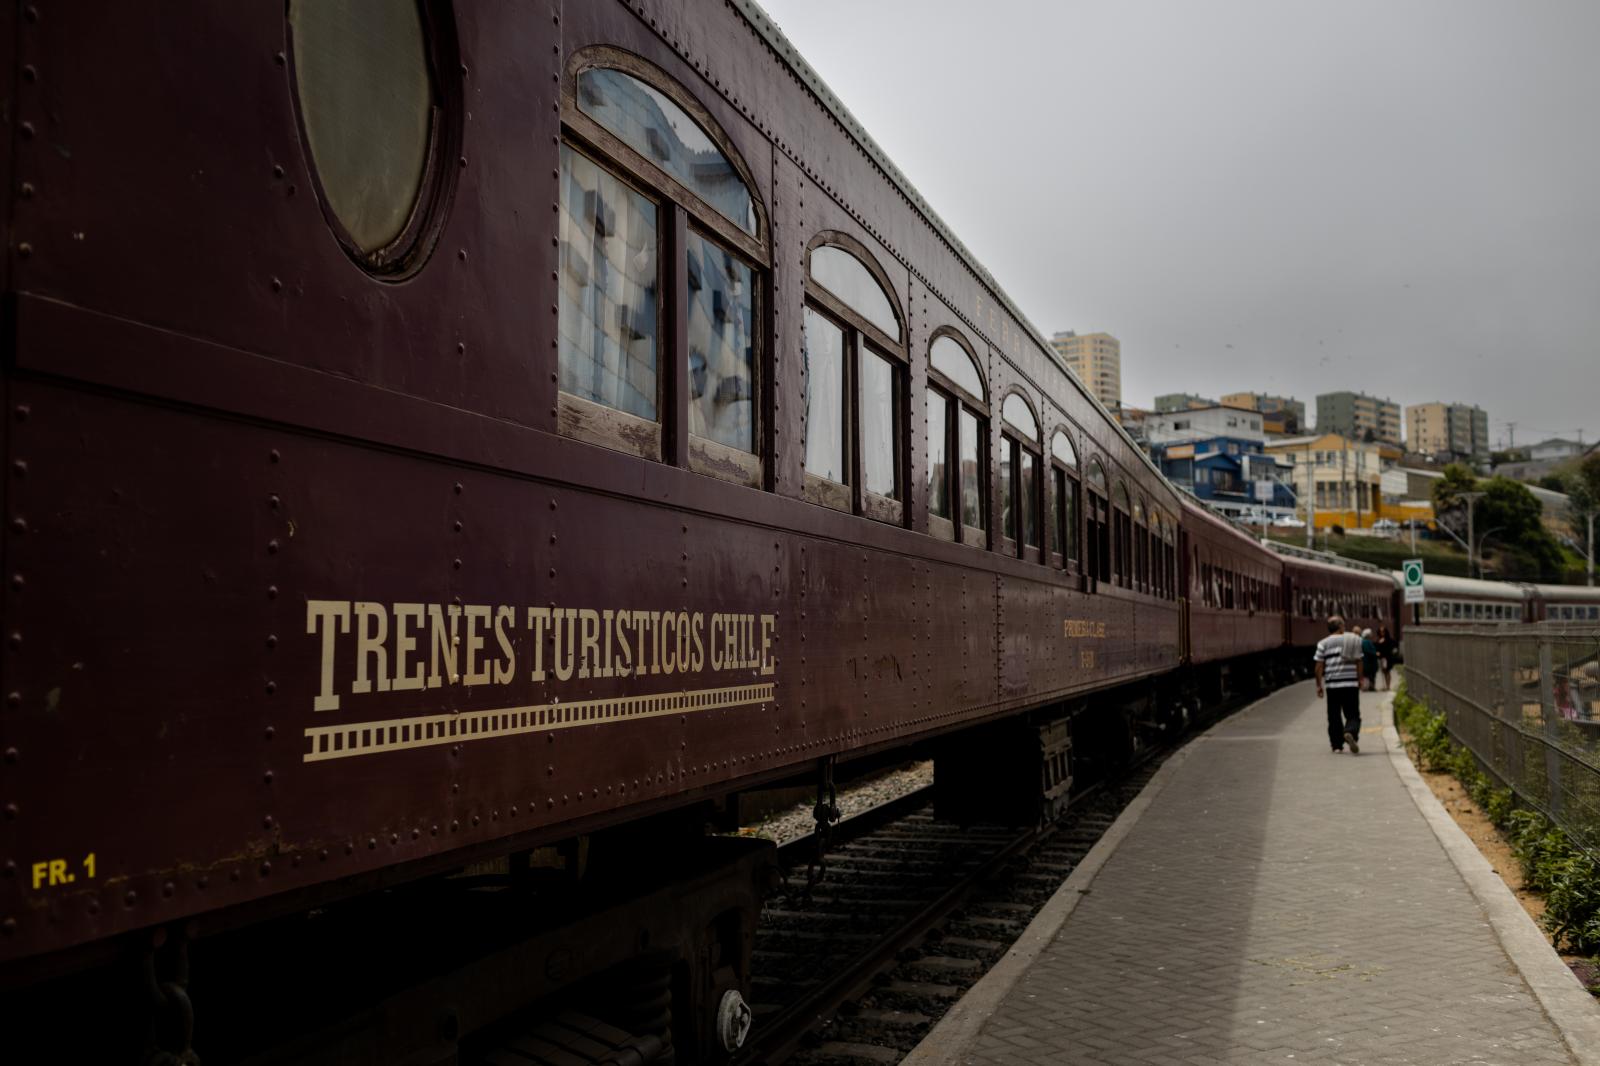 El País: Viaje al mar a bordo del único tren centenario de Chile